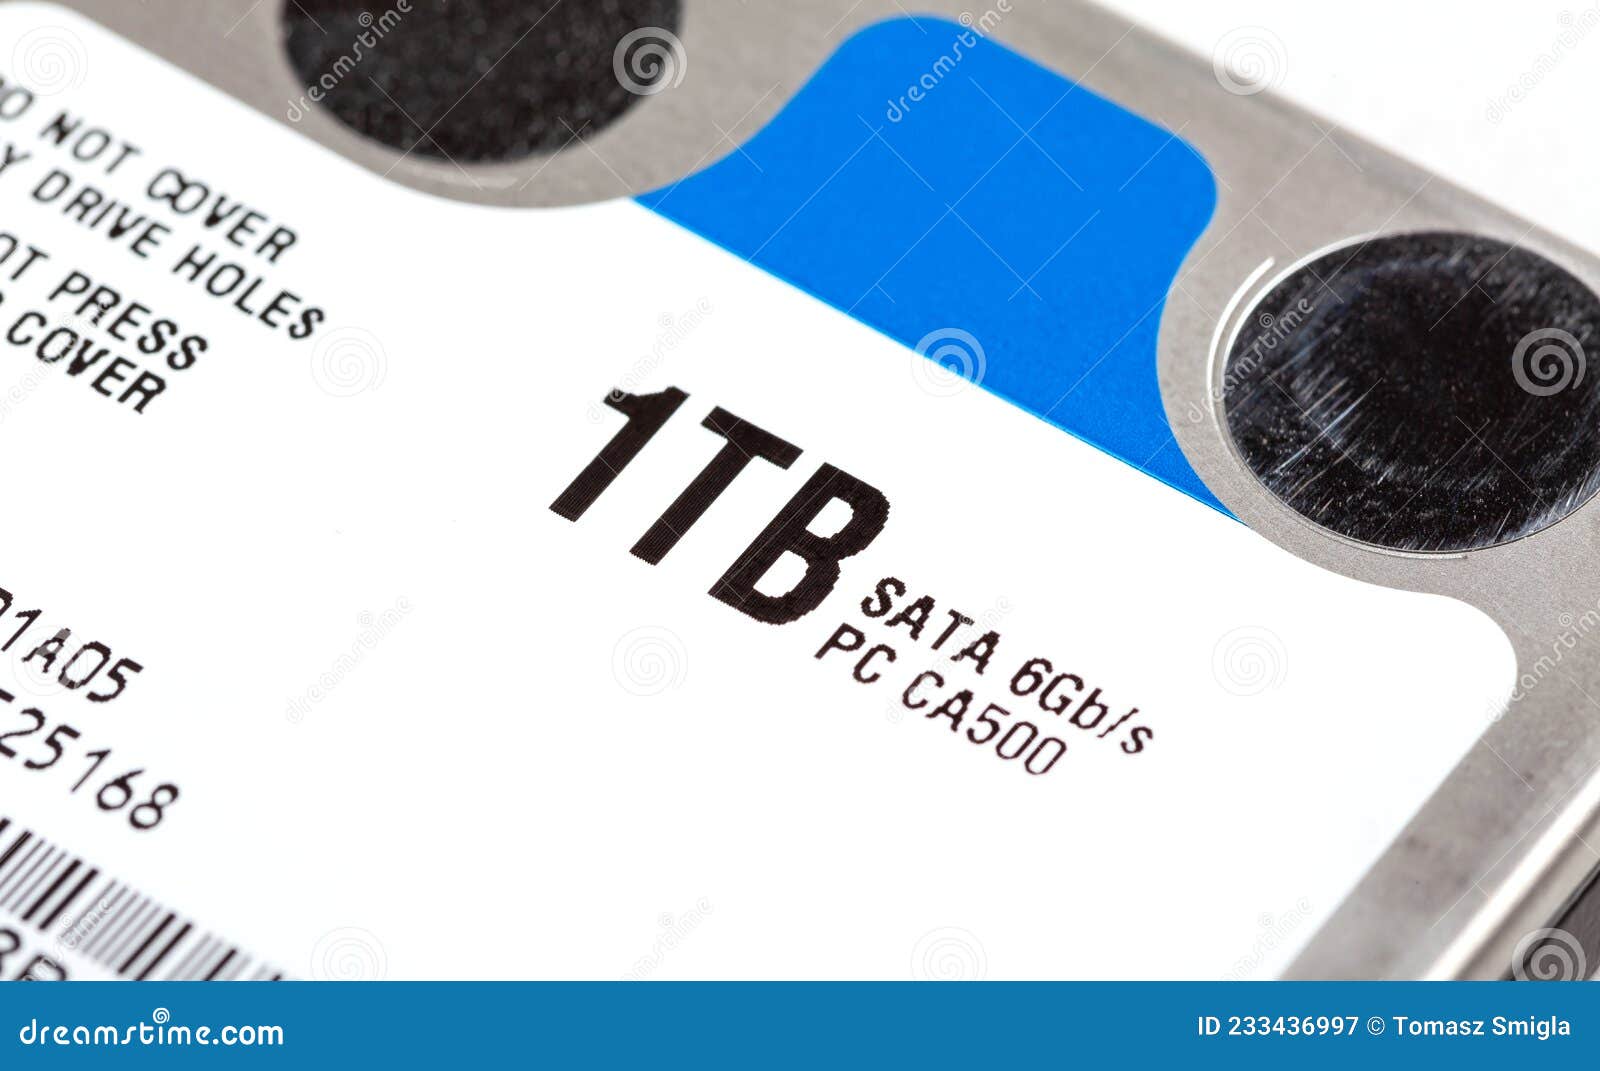 1 Tb Espacio De Almacenamiento De Disco Duro Simple Terabyte 25 Pulgadas Macro De Objeto De Cierre Extremo Etiqueta De Núme Imagen de - Imagen componentes, salvaguardia: 233436997